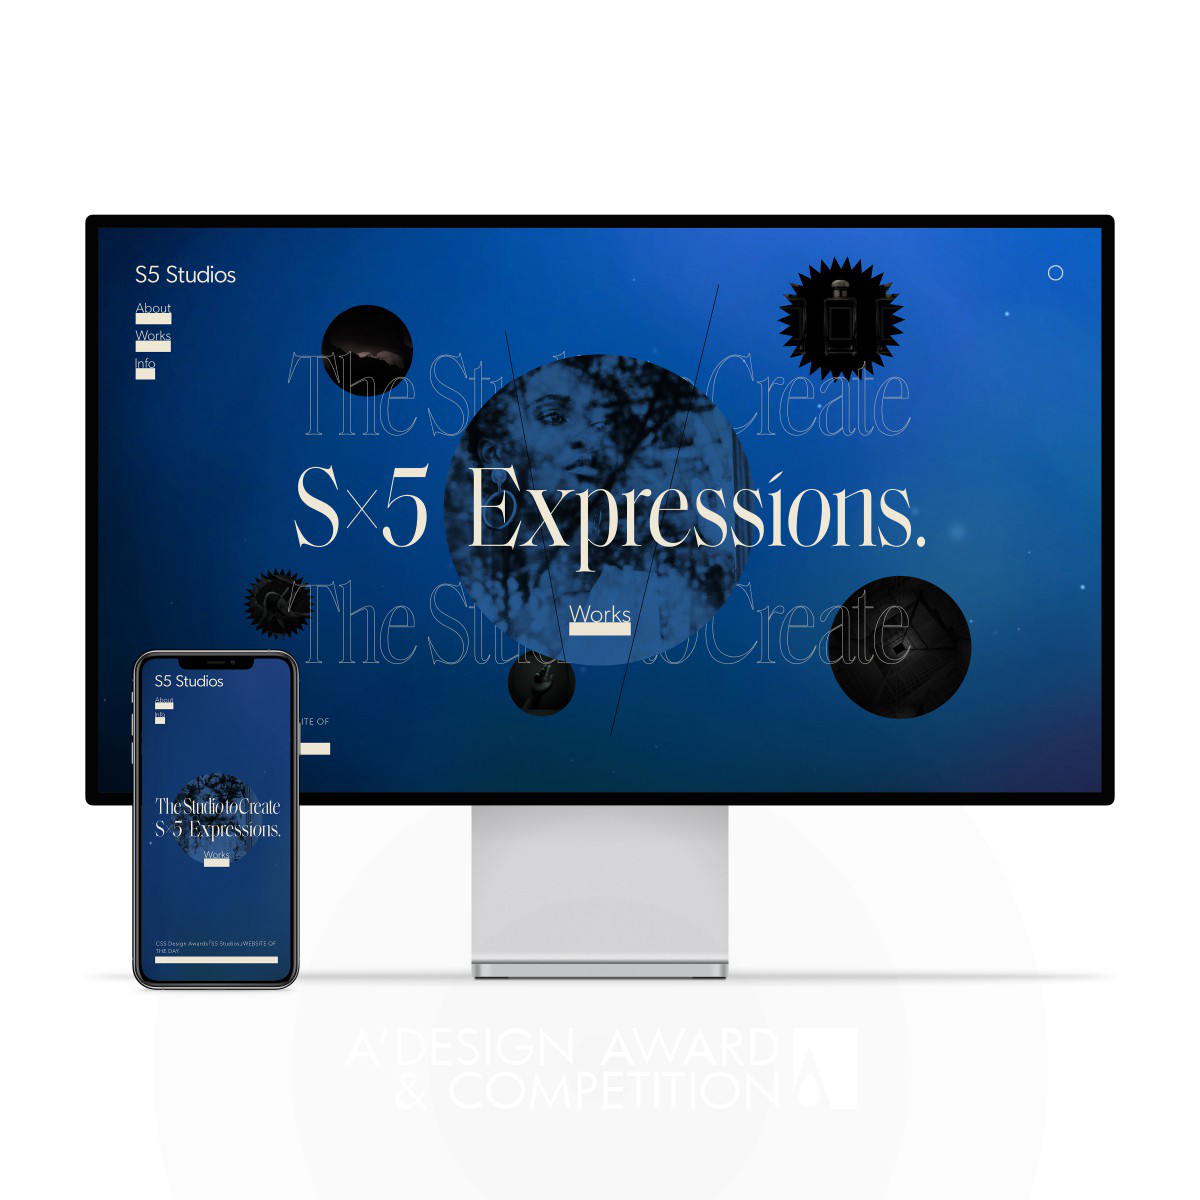 S5 Studios: Un Sito Web che Unisce Arte, Design e Tecnologia